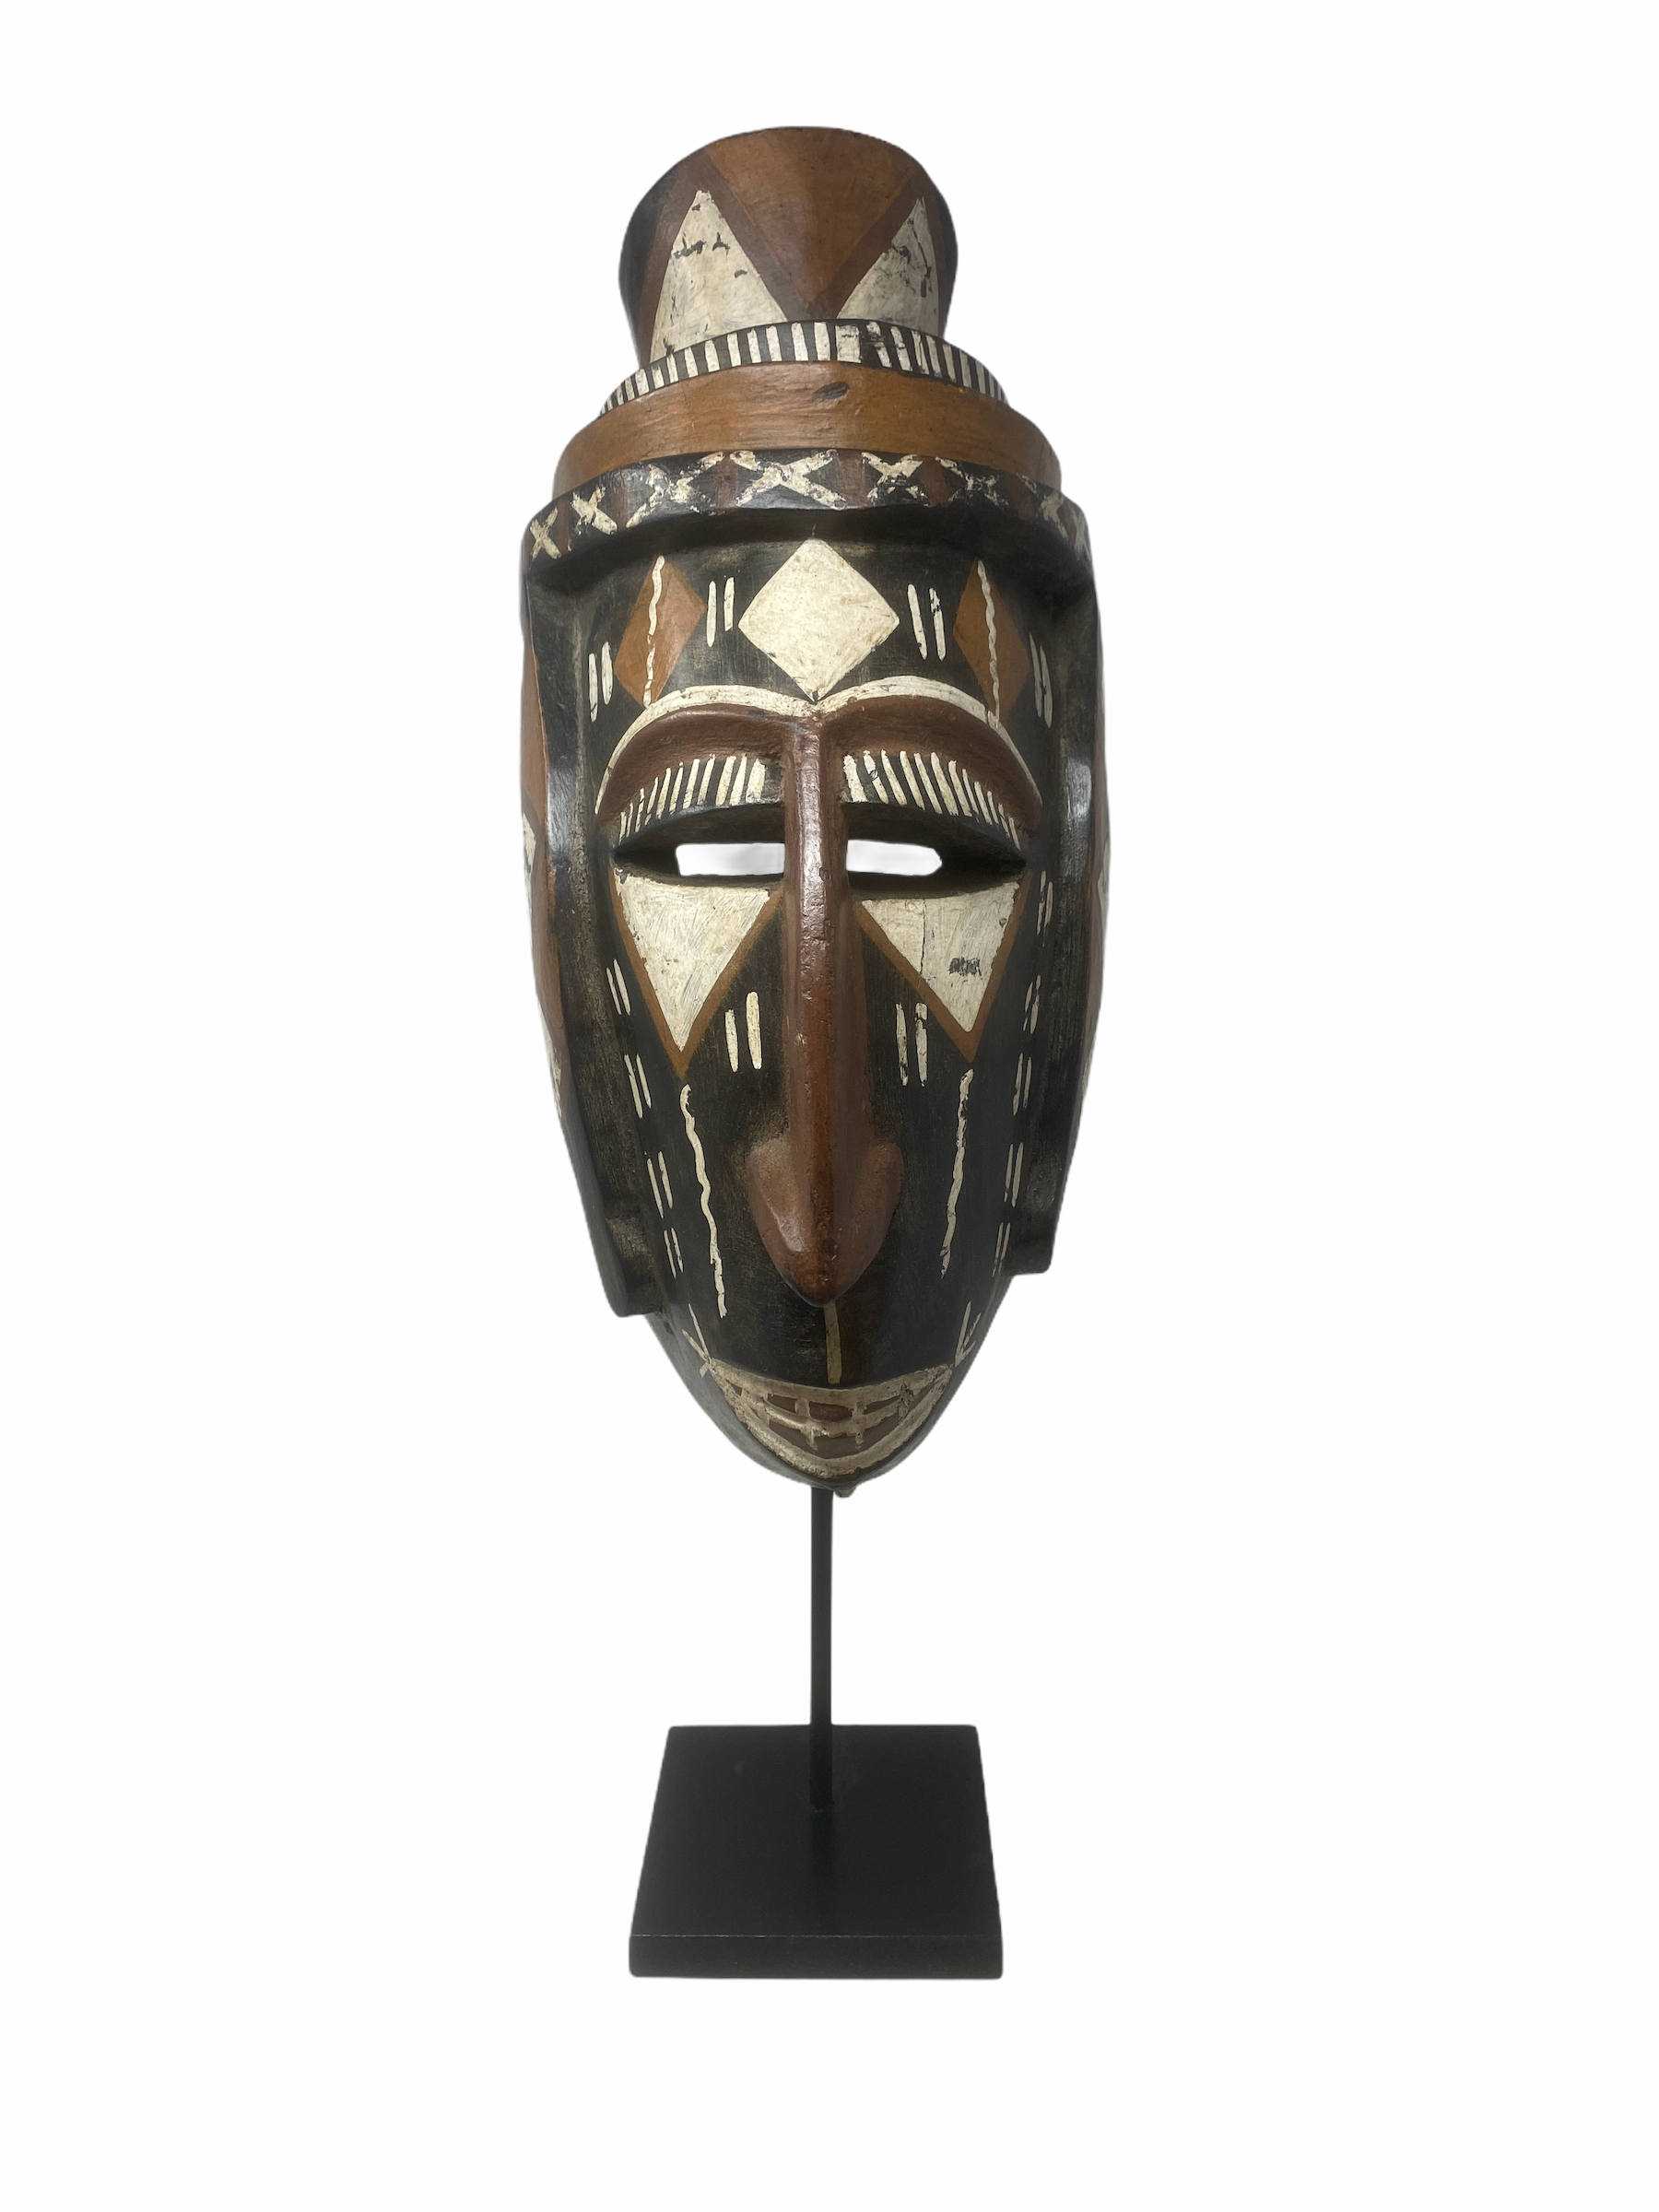 Ashanti mask - Ghana